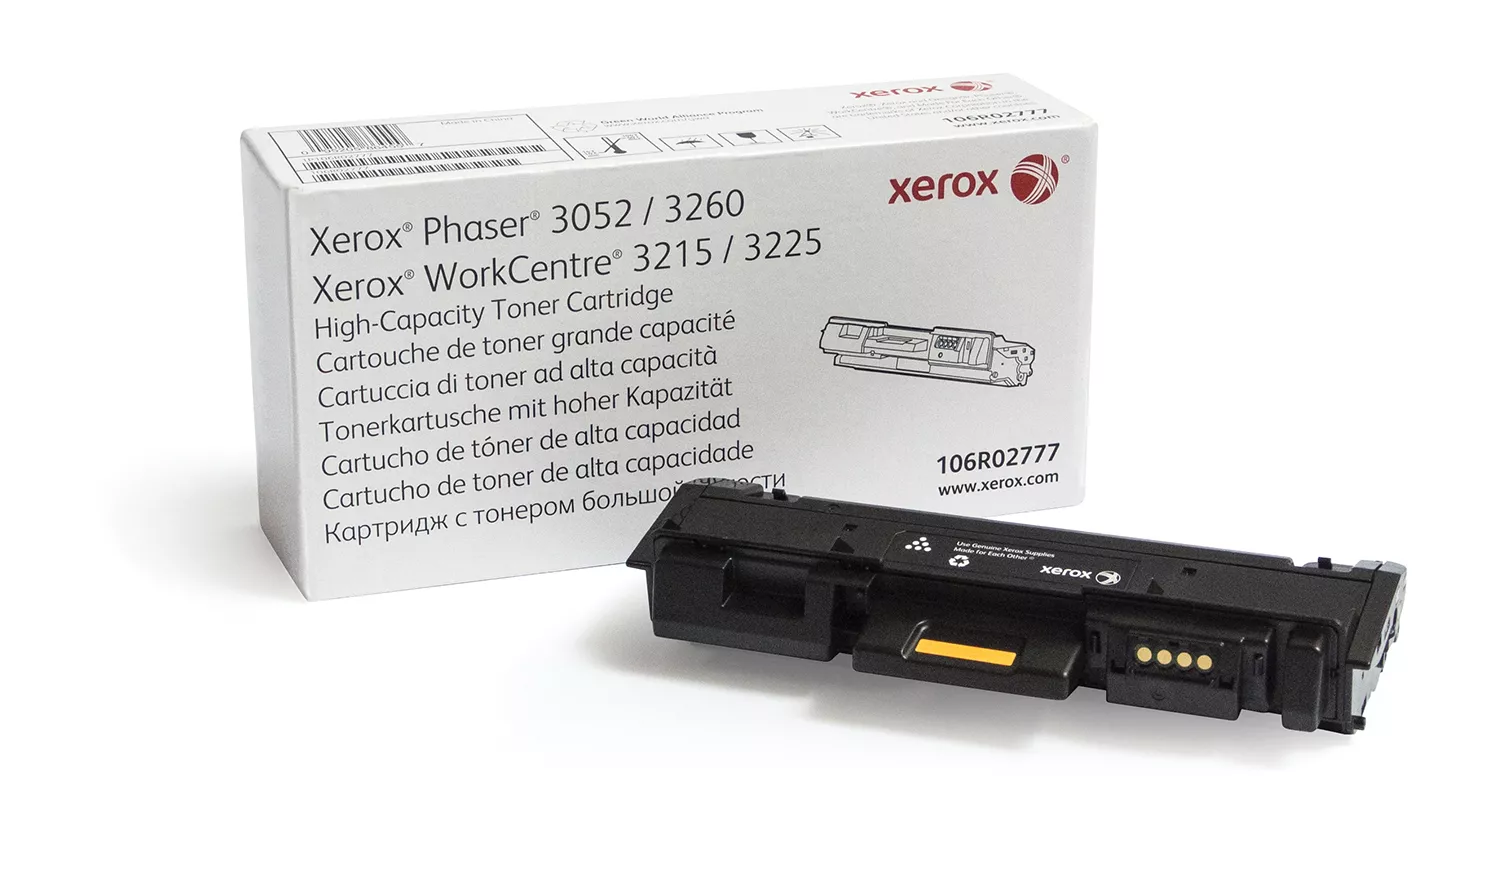 Achat XEROX PHASER 3260 WorkCentre 3225 cartouche de toner au meilleur prix